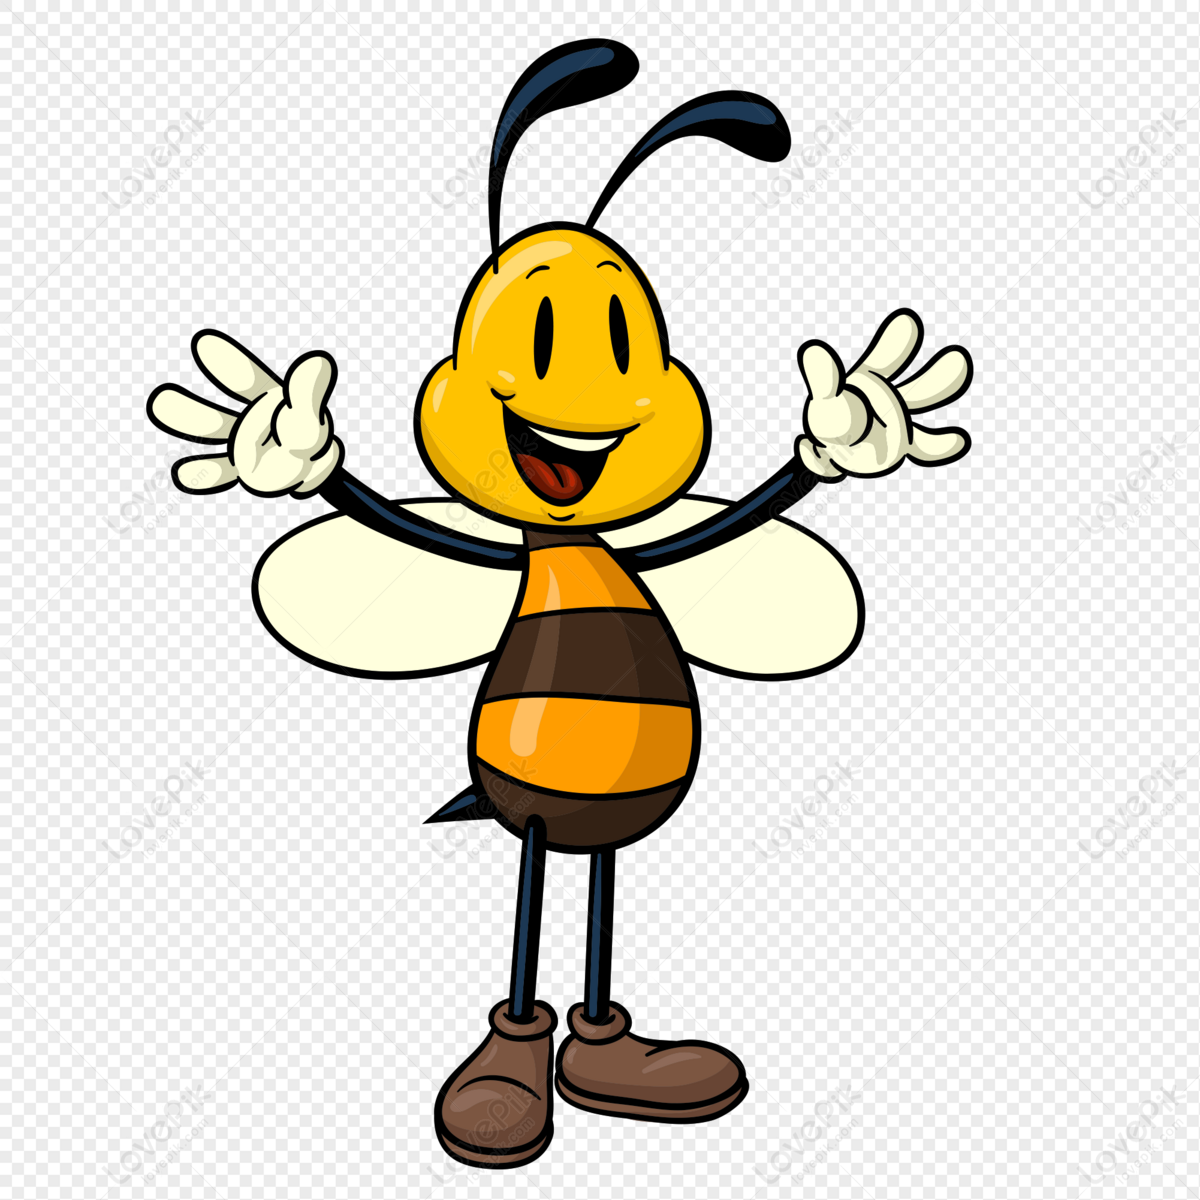 Những hình ảnh con ong dễ thương rất được yêu thích bởi nét tinh nghịch, năng động của loài côn trùng này. Bạn có thể tìm thấy các bức ảnh về con ong nhỏ bé, vui tươi và đáng yêu trên internet. Hãy nhanh tay xem và chia sẻ với bạn bè của mình để lan tỏa tinh thần vui tươi, yêu đời nhé!